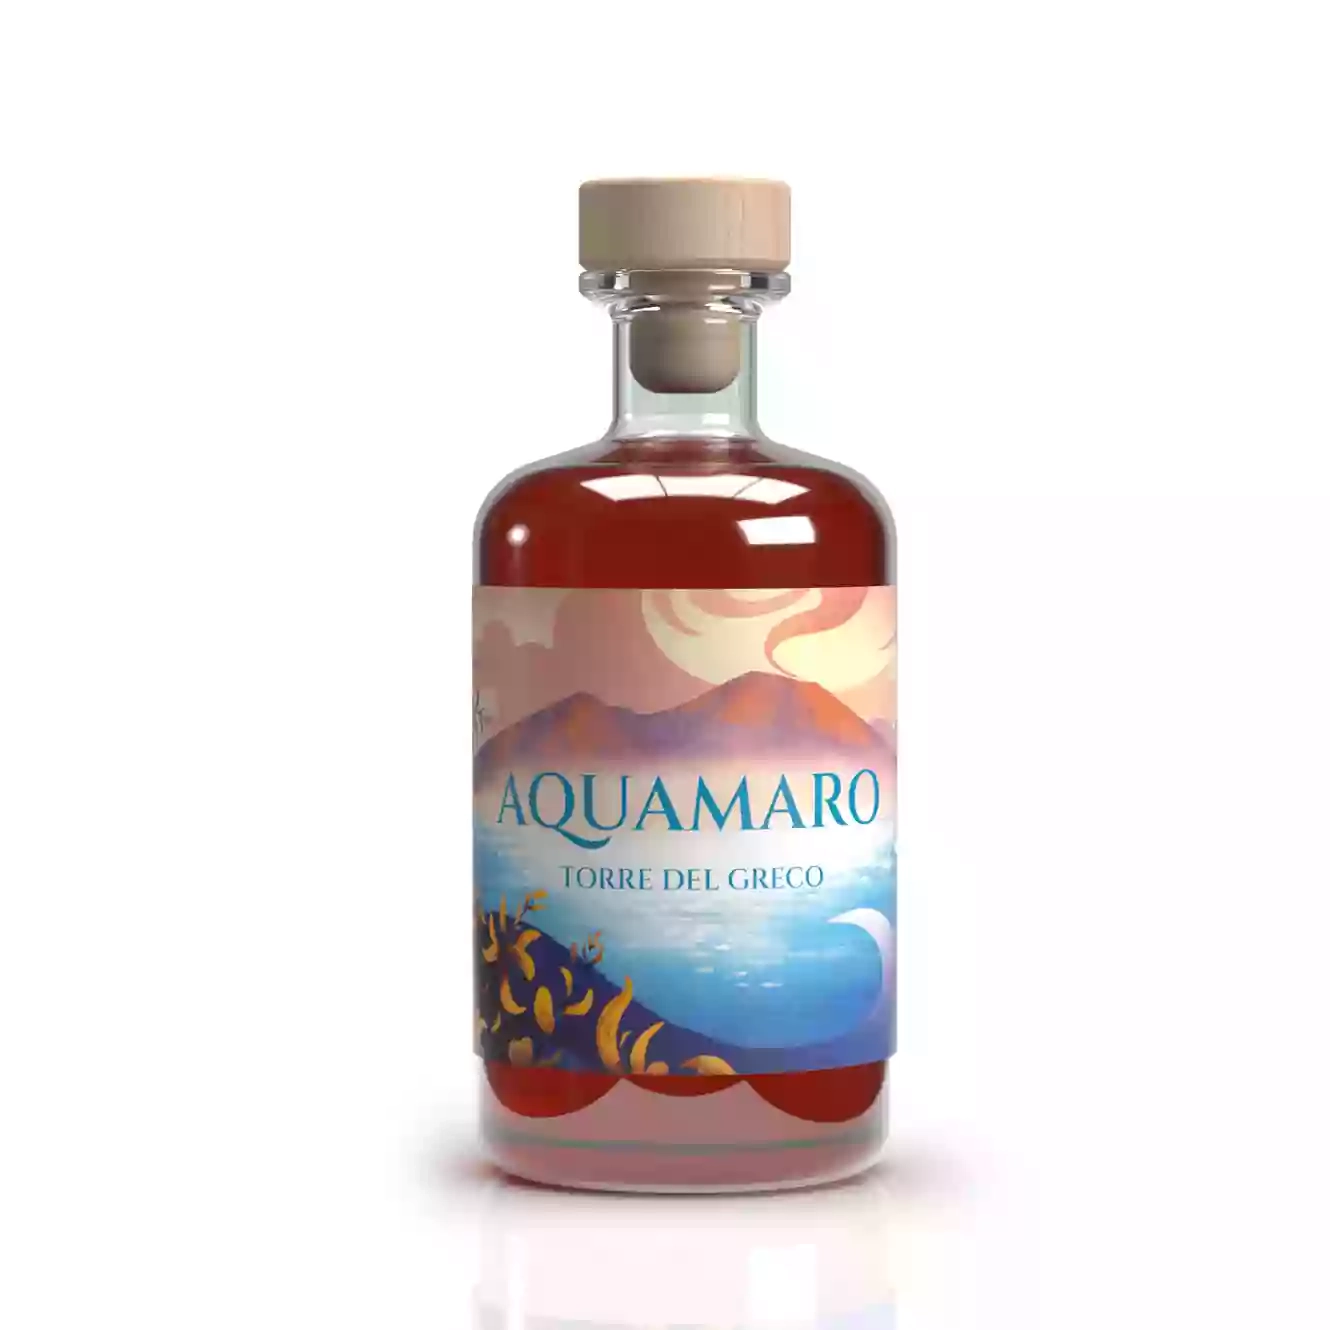 AQUAMARO - Liquore Artigianale - Torre del greco